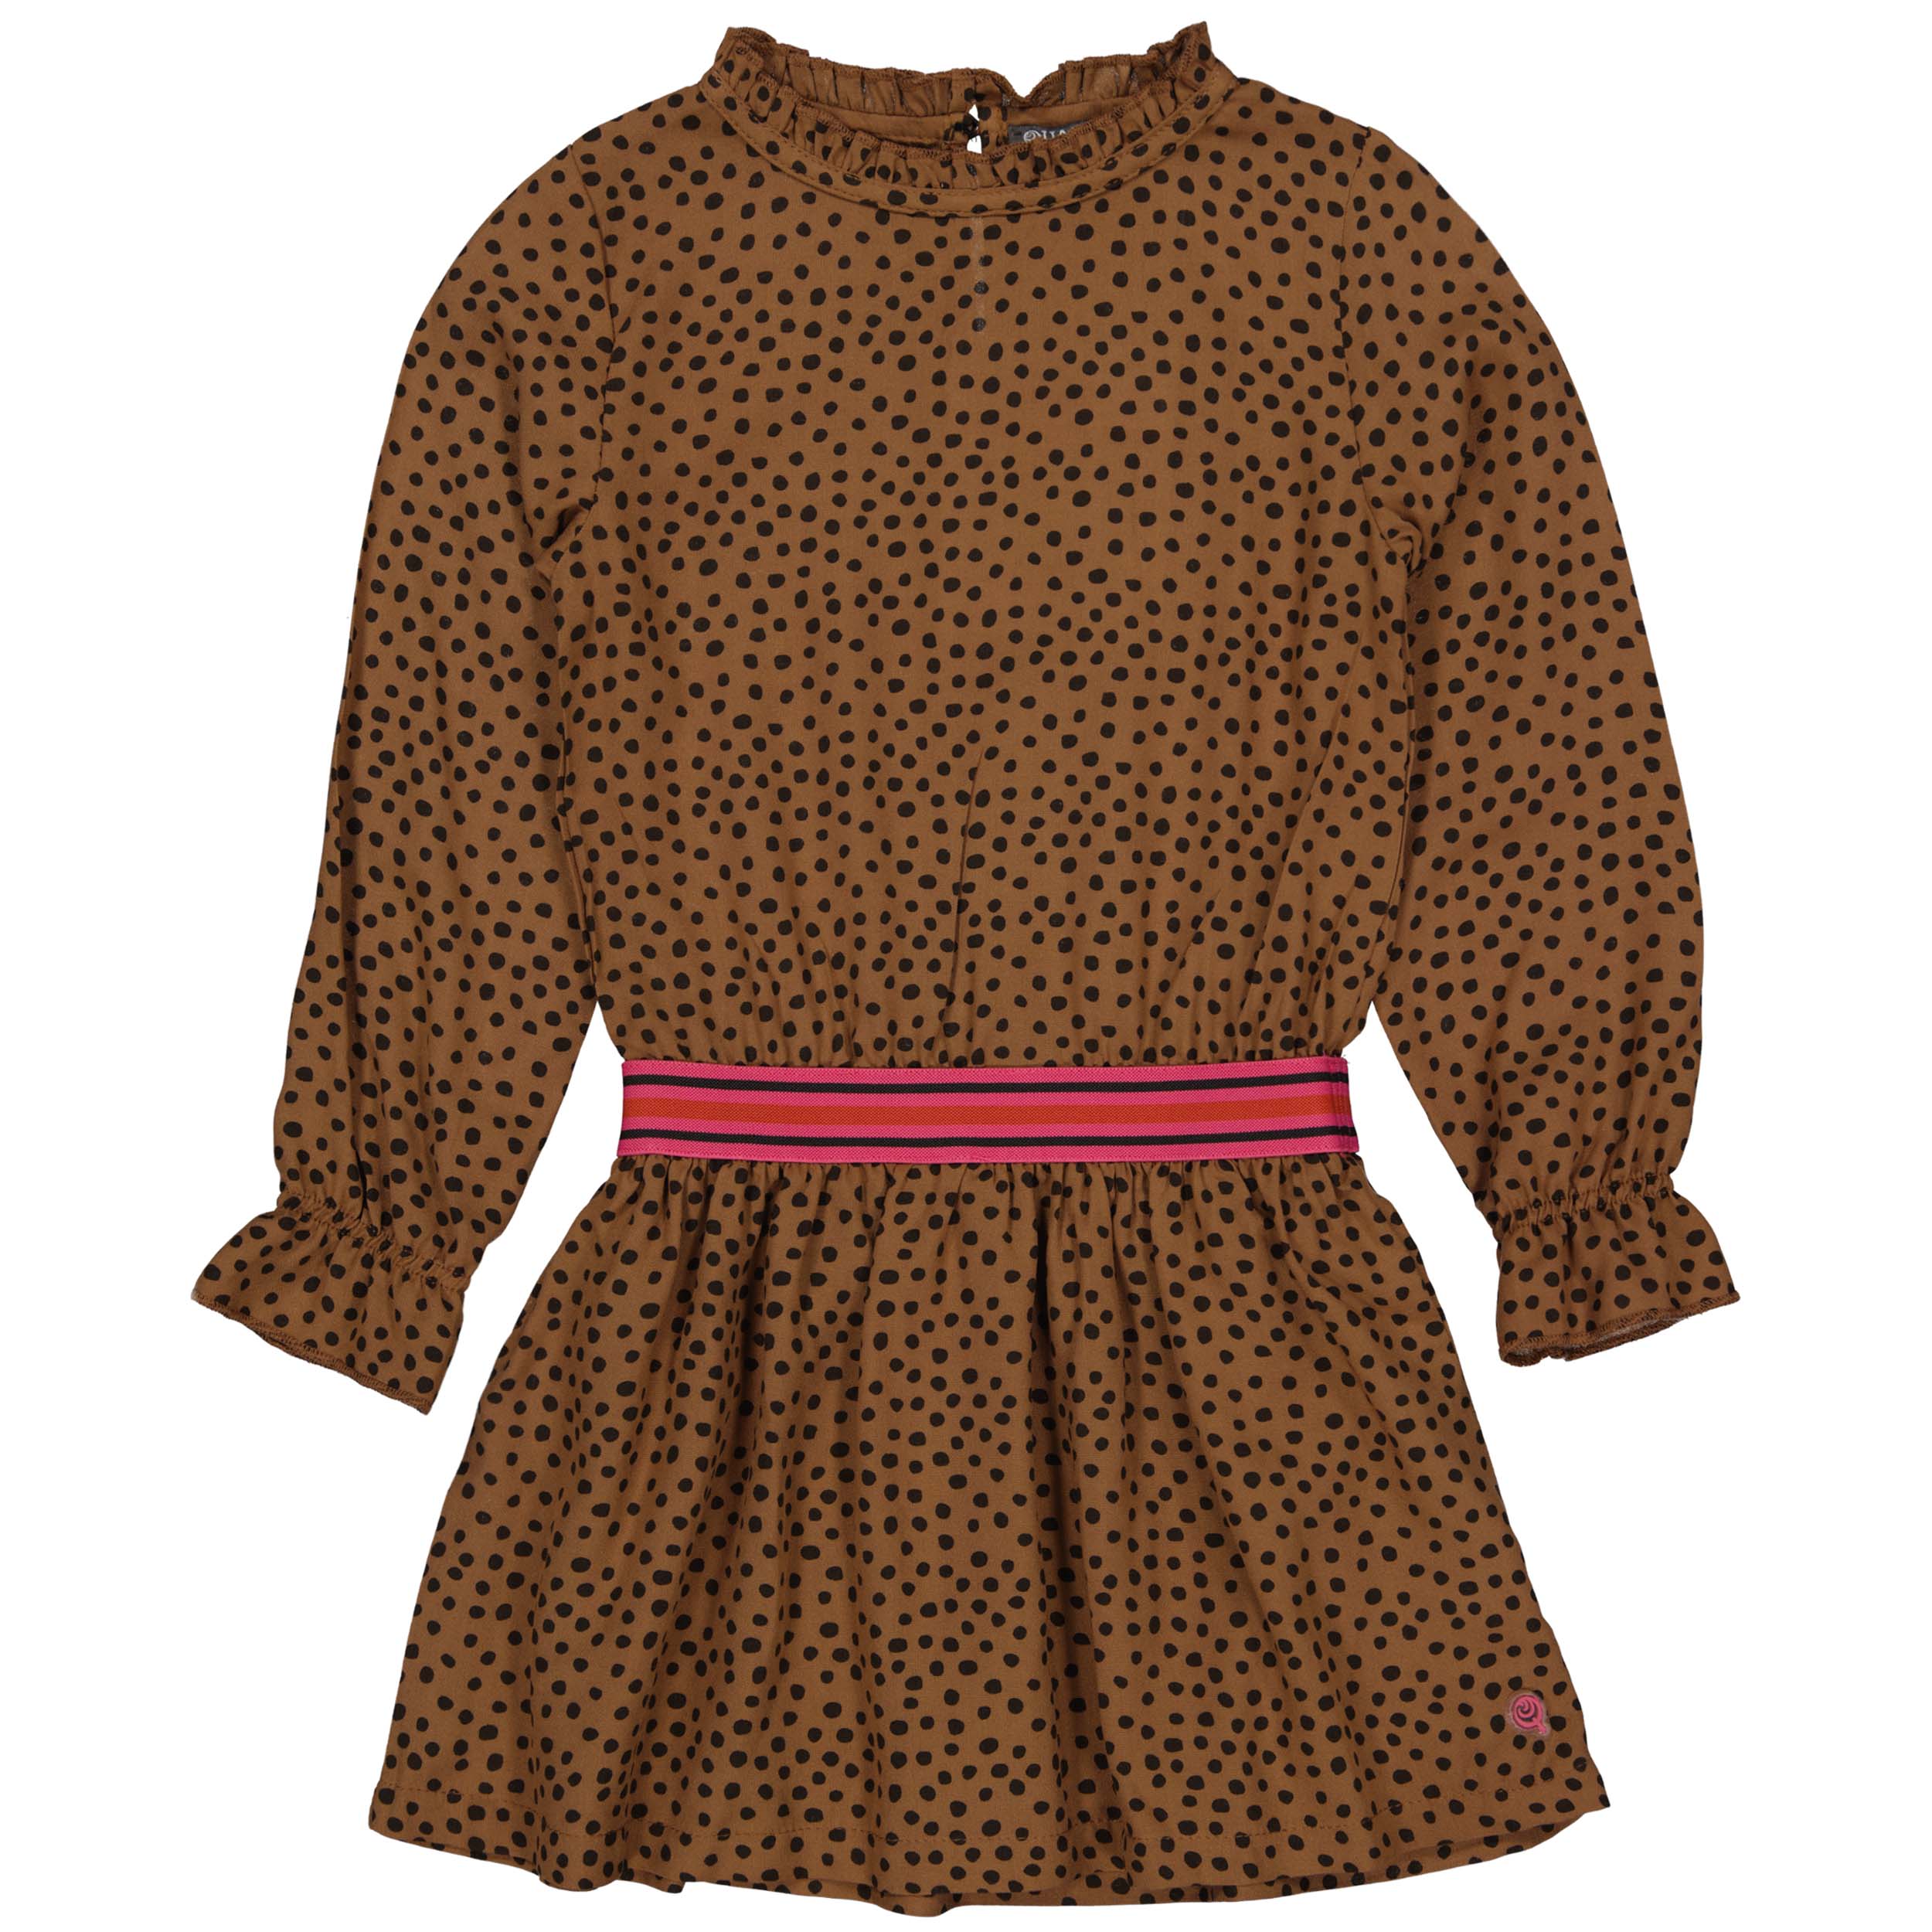 Meisjes Dress RANAW221 van Quapi in de kleur AOP Brown Fudge Dot in maat 98-104.